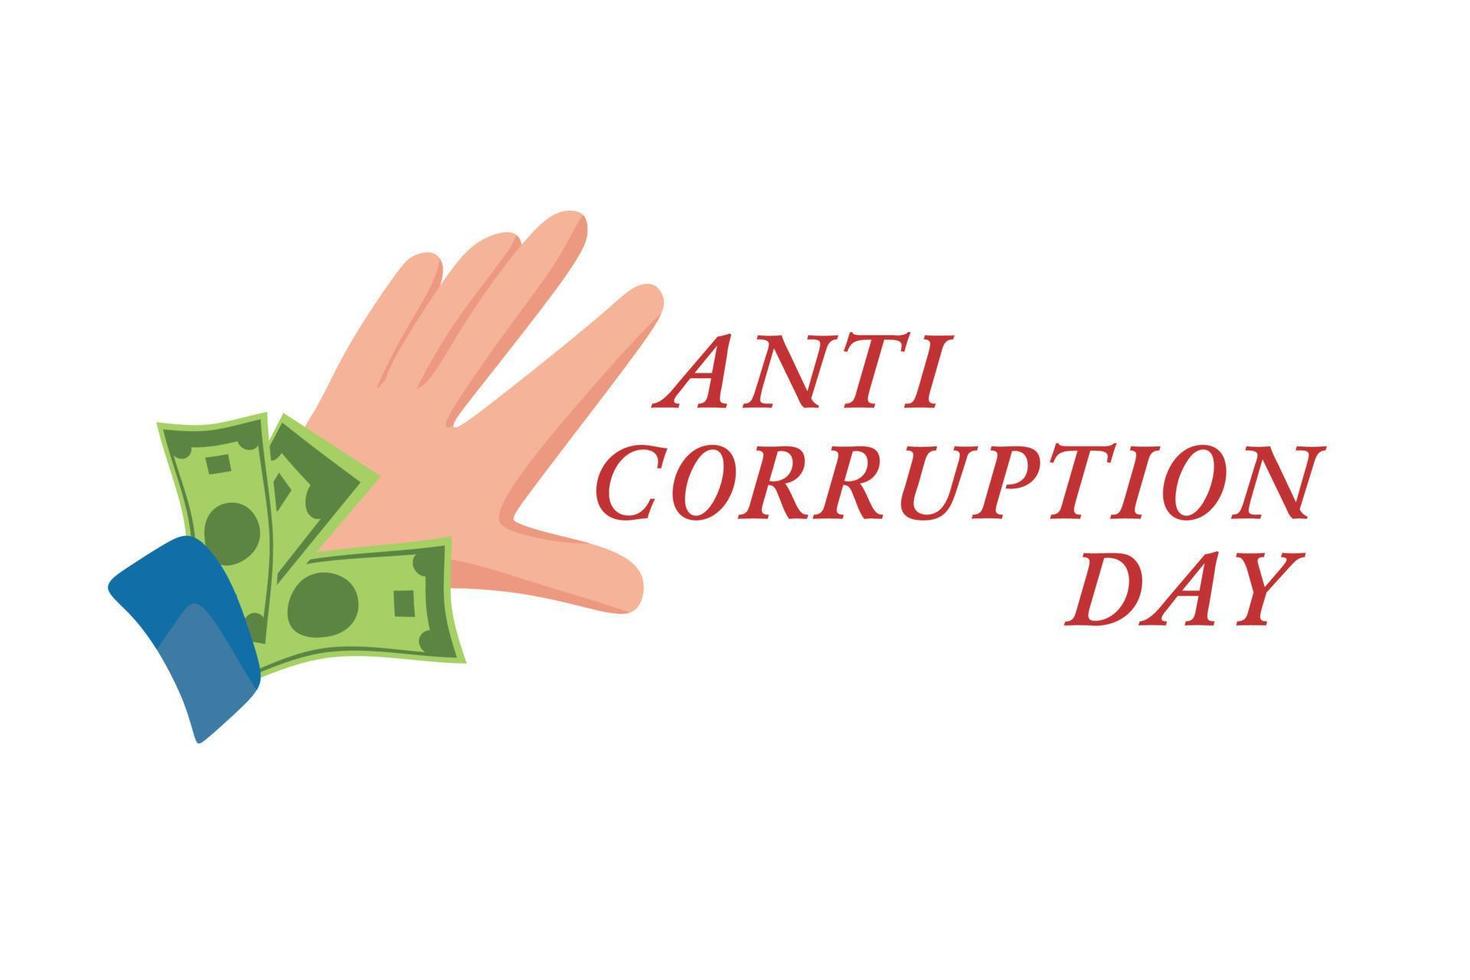 dia internacional contra a corrupção, 9 de dezembro. pôster ou publicação na internet. ilustração vetorial dos desenhos animados. vetor